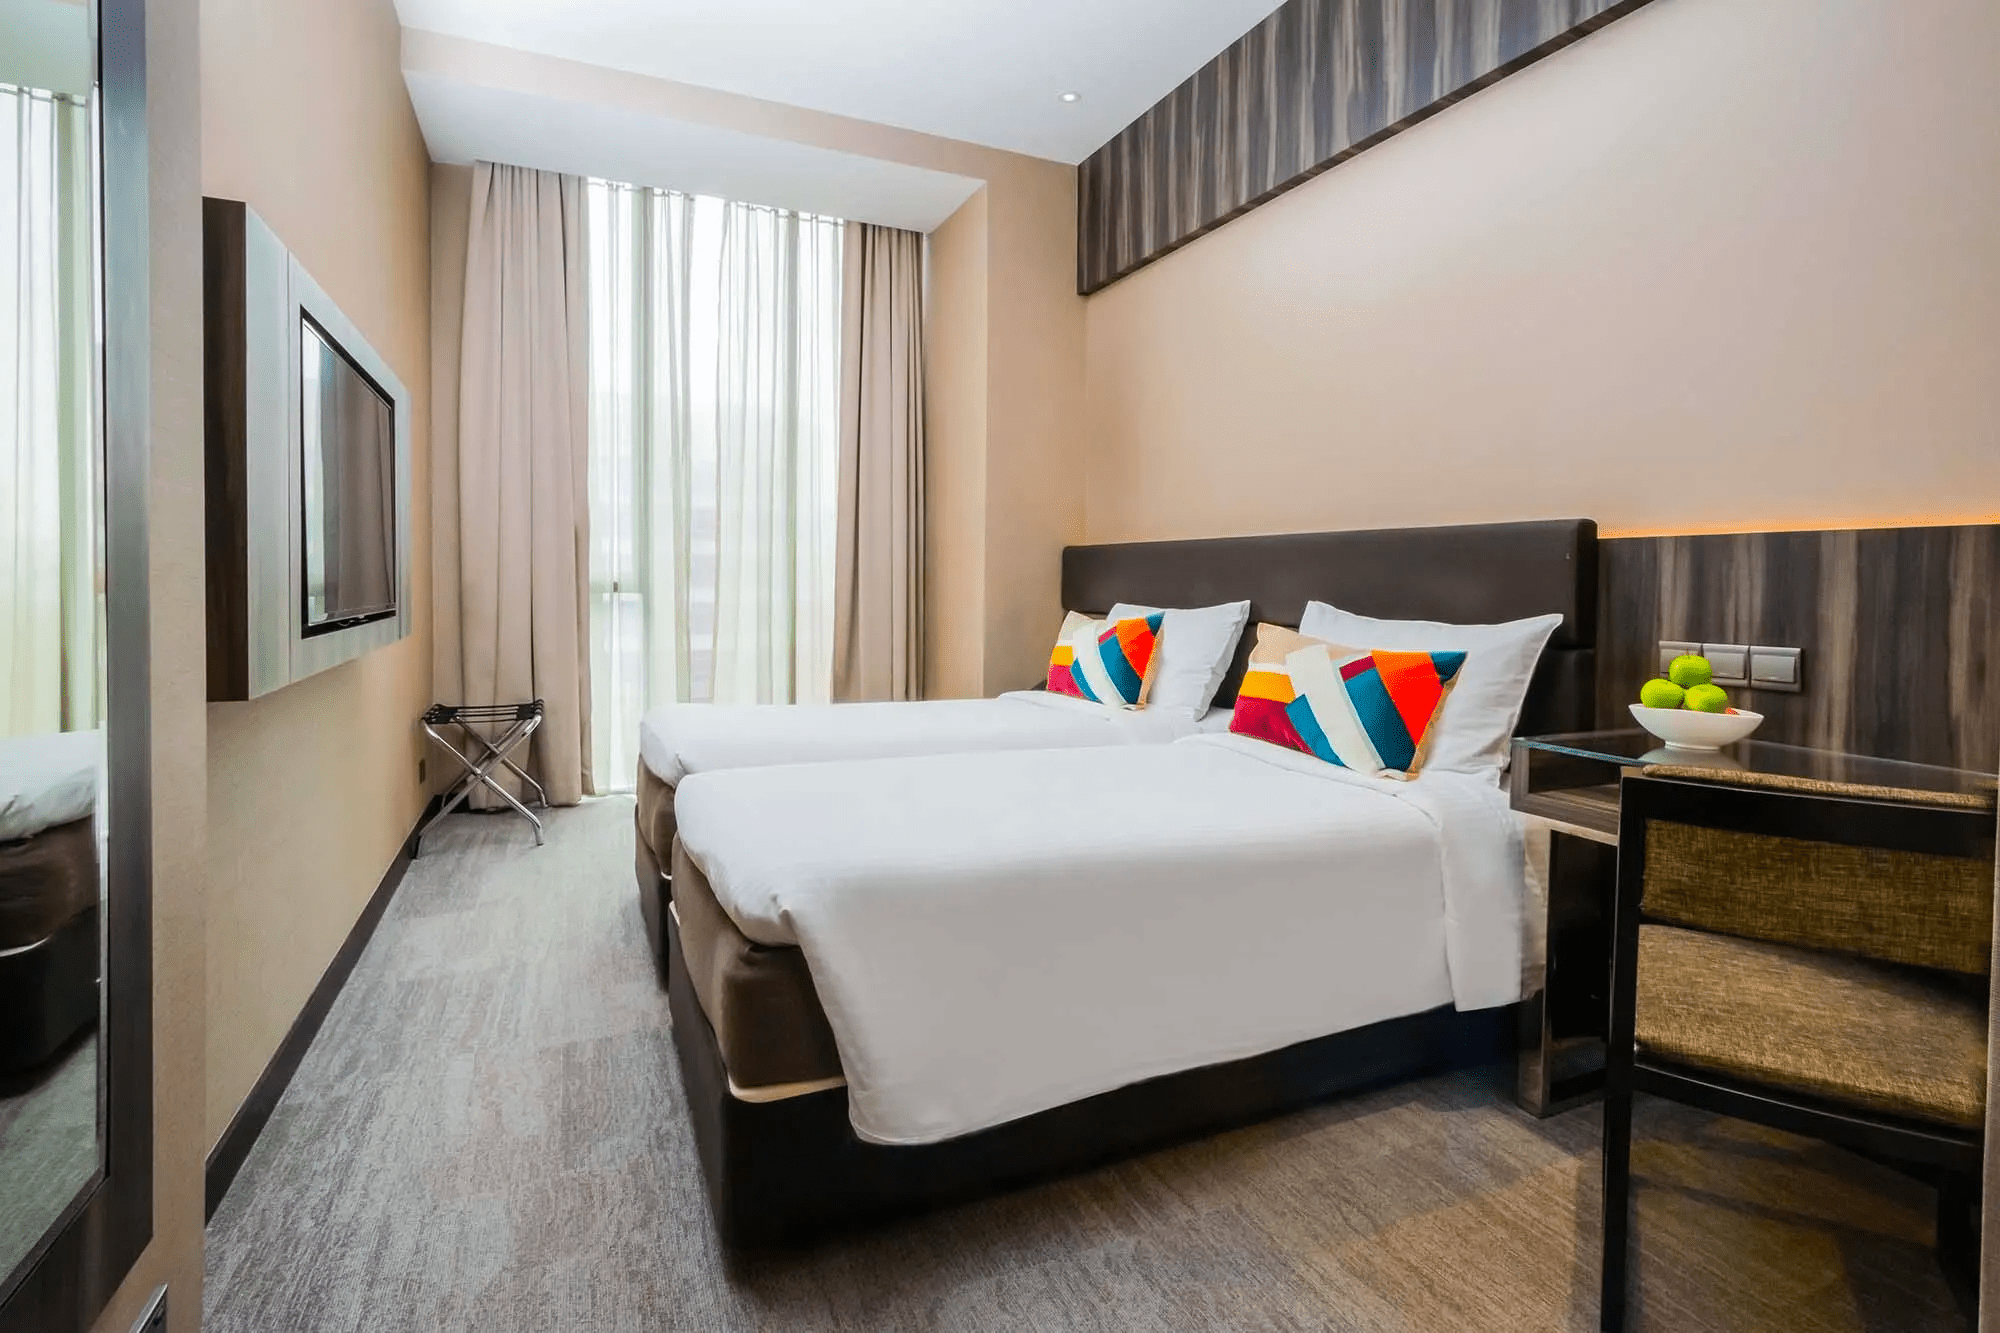 Aqueen hotel paya lebar room - heartland hotels